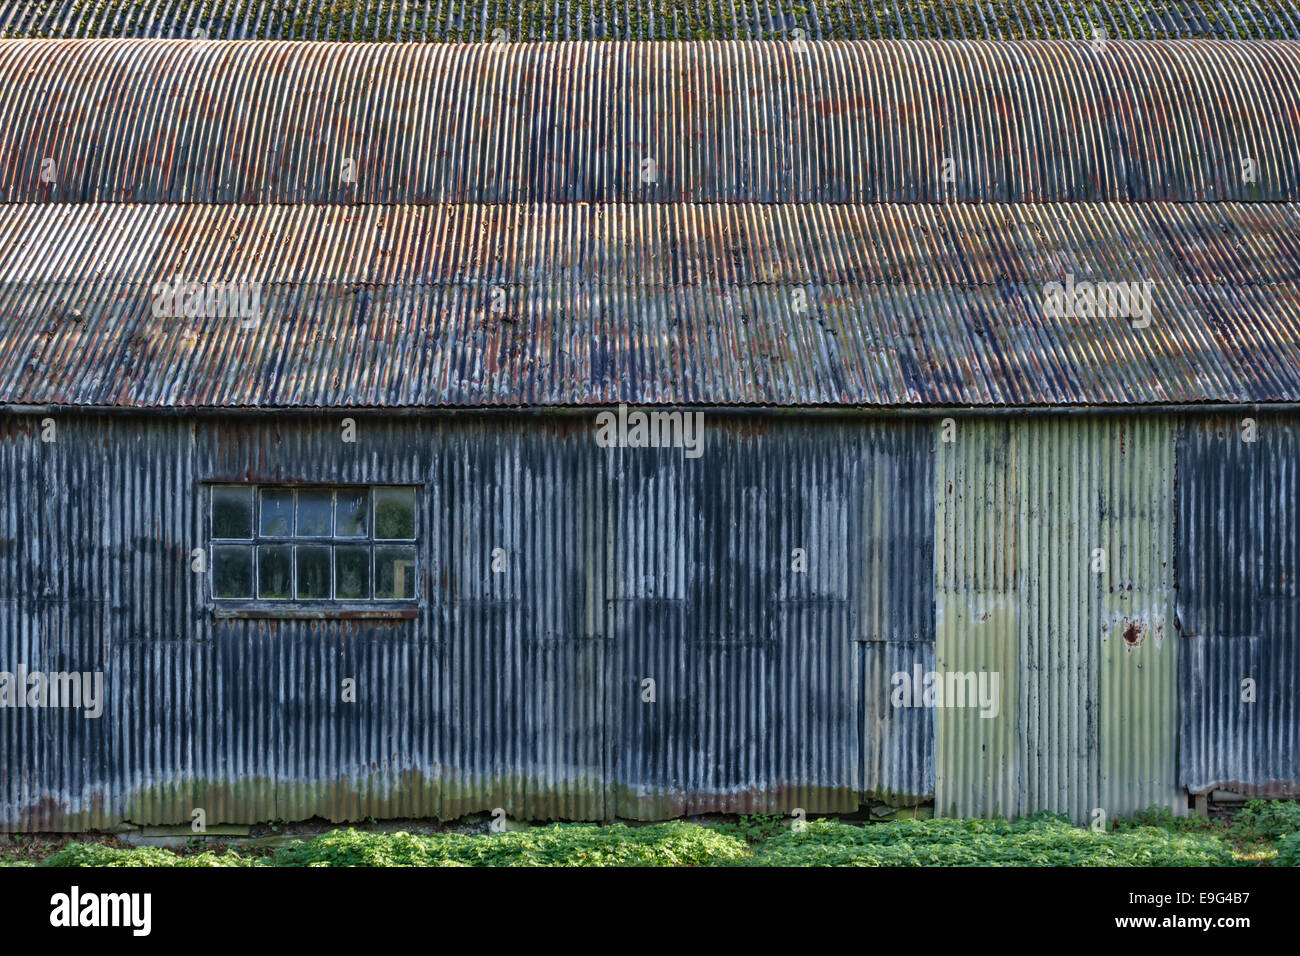 Old corrugated iron farm barn, Herefordshire, UK Stock Photo